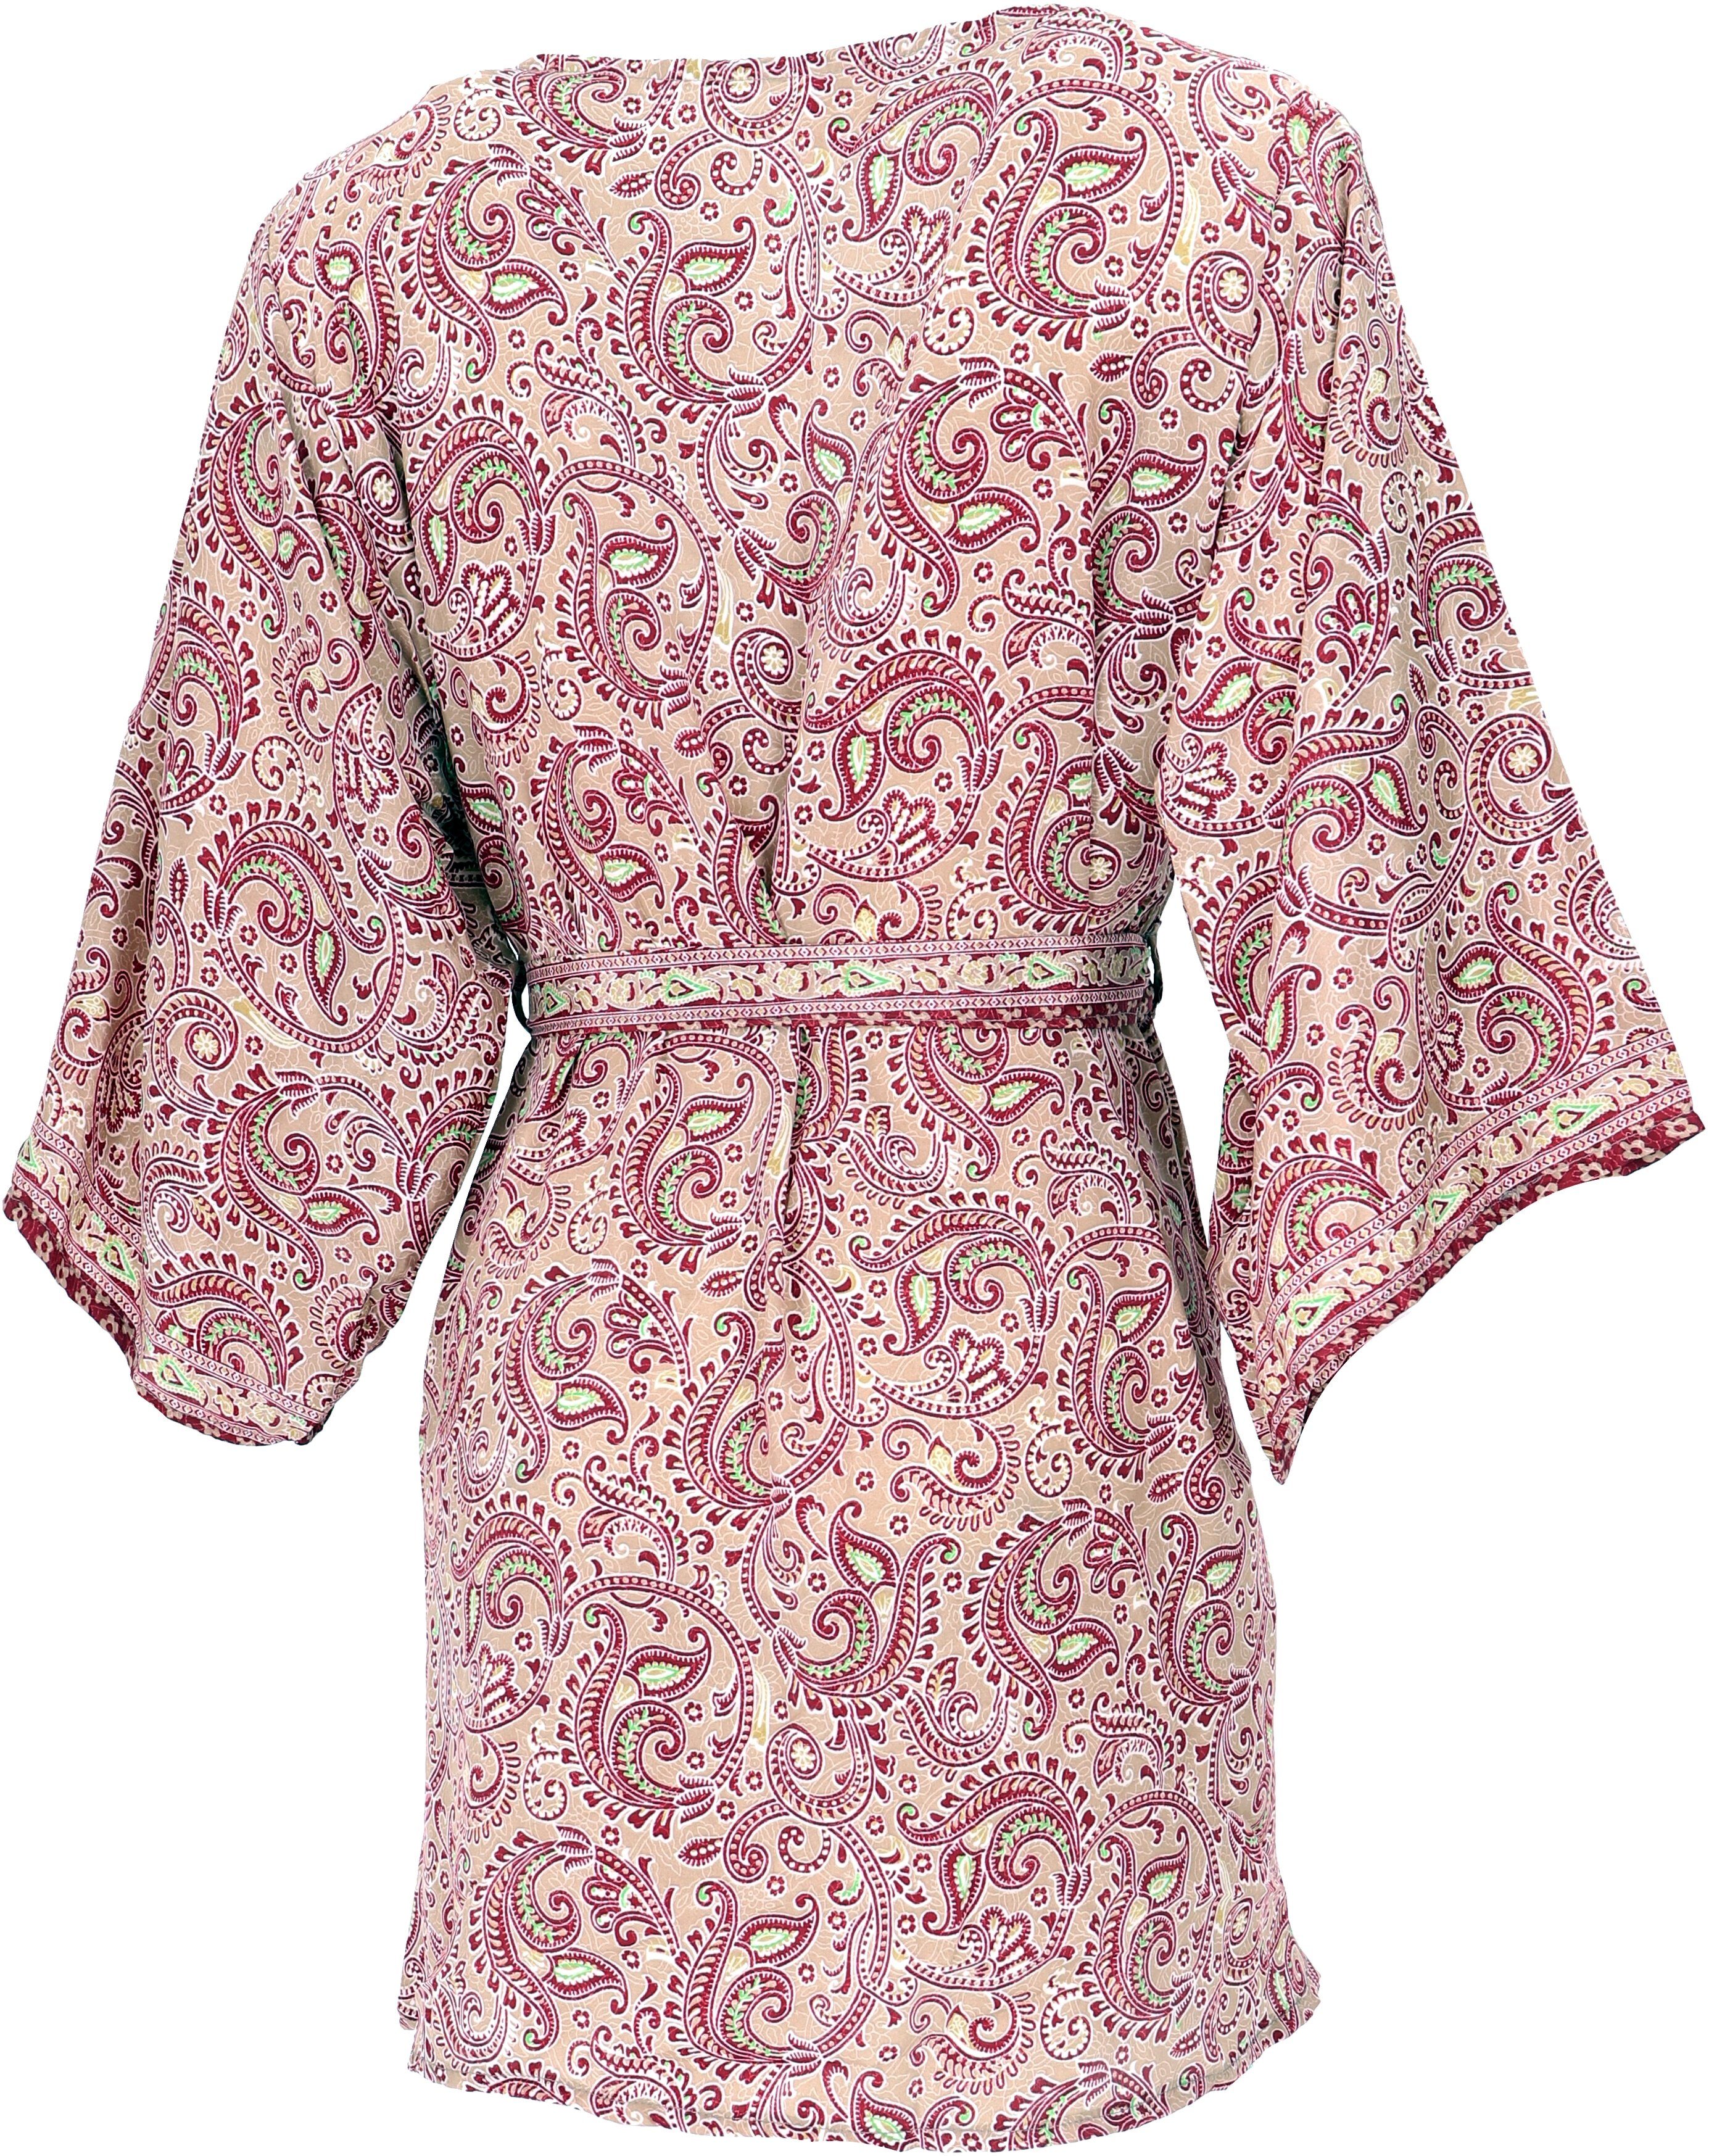 Guru-Shop Kimono alternative Kimonojäckchen, Kimono, Boho Bekleidung kurzer Kimonokleid.., beige/bordeaux